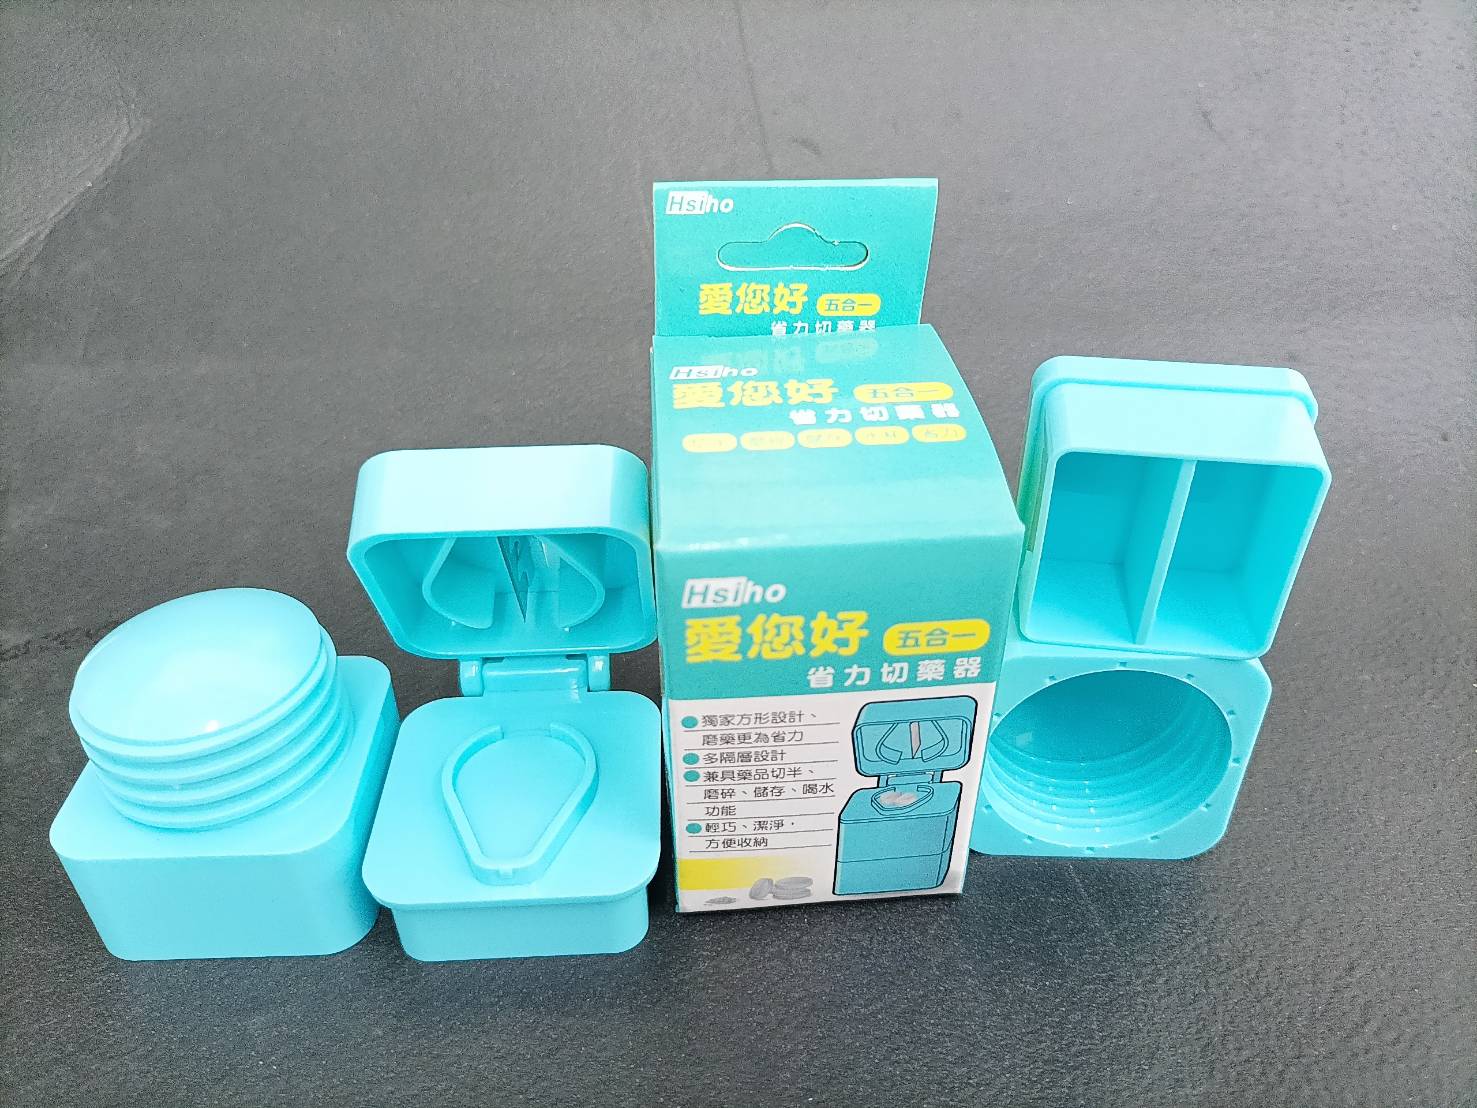 愛您好 五合一磨碎切藥器 台灣製 安全認證 磨藥磨碎切片器 切藥藥丸分切器藥盒 藥水杯儲存盒